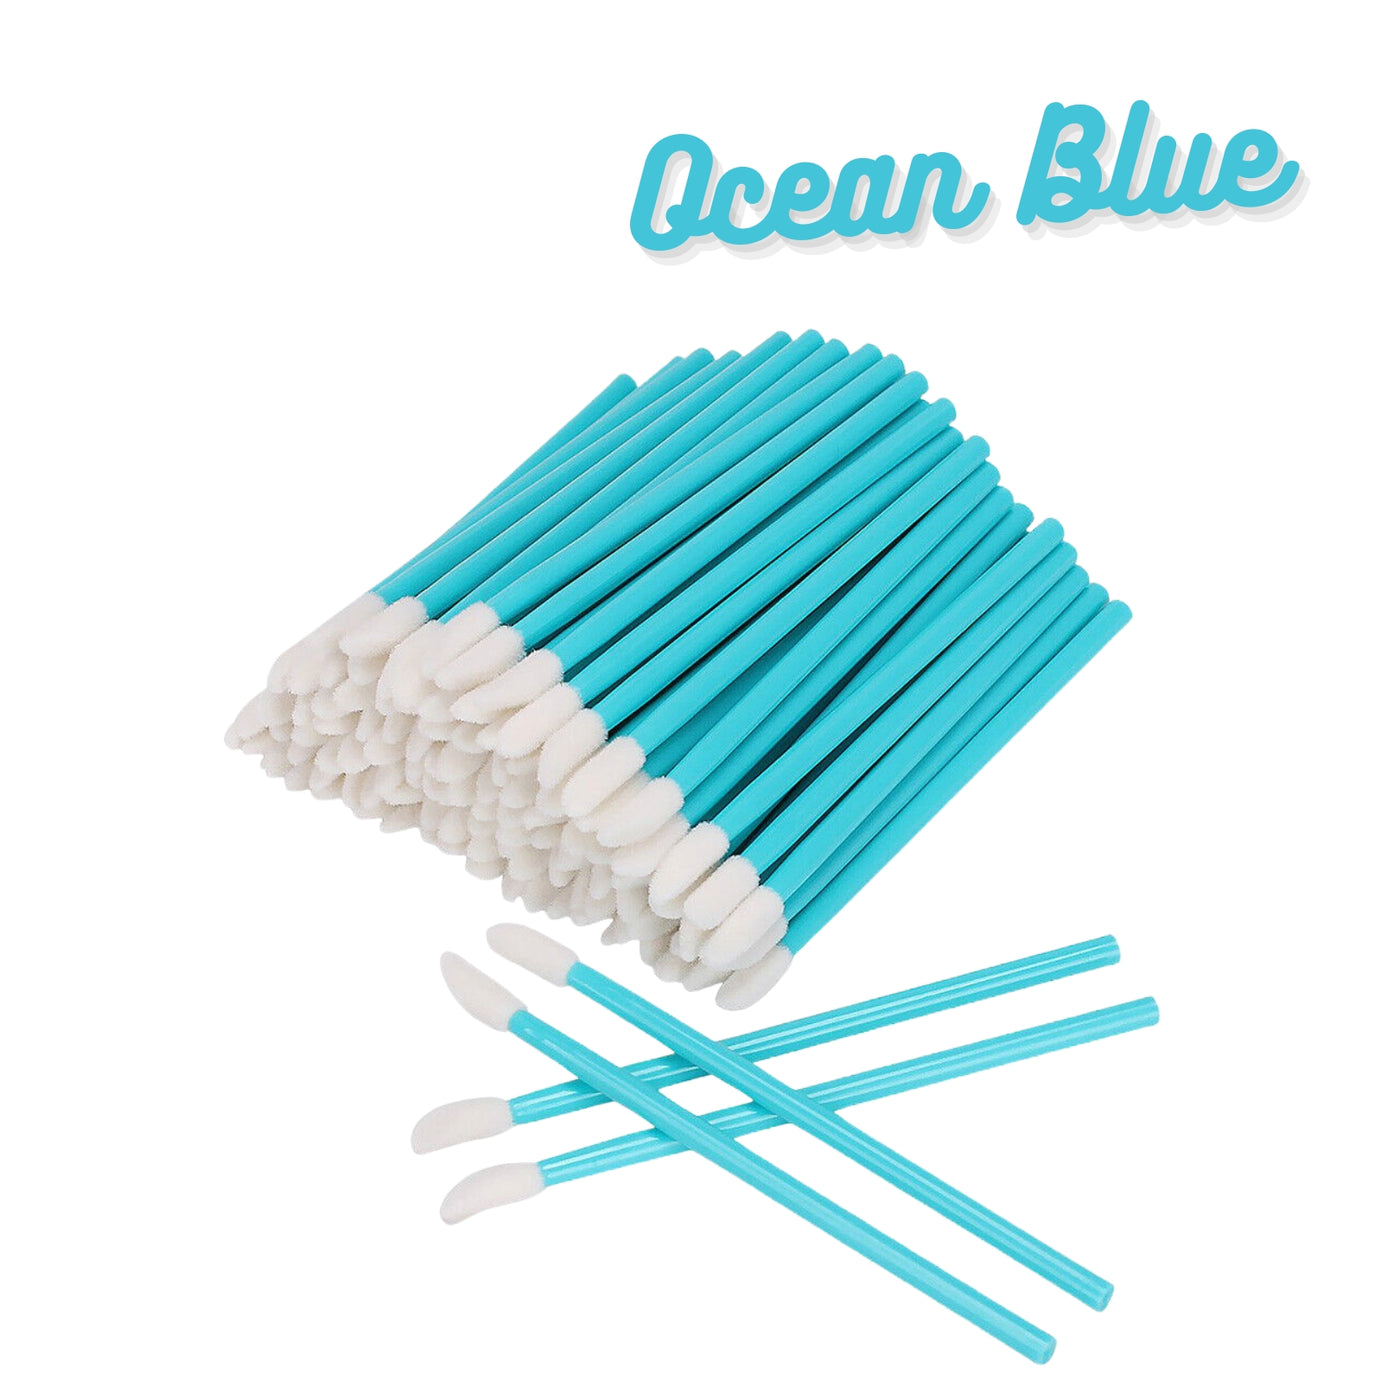 Flocked applicator brushes for eyelash extensions - ocean blue